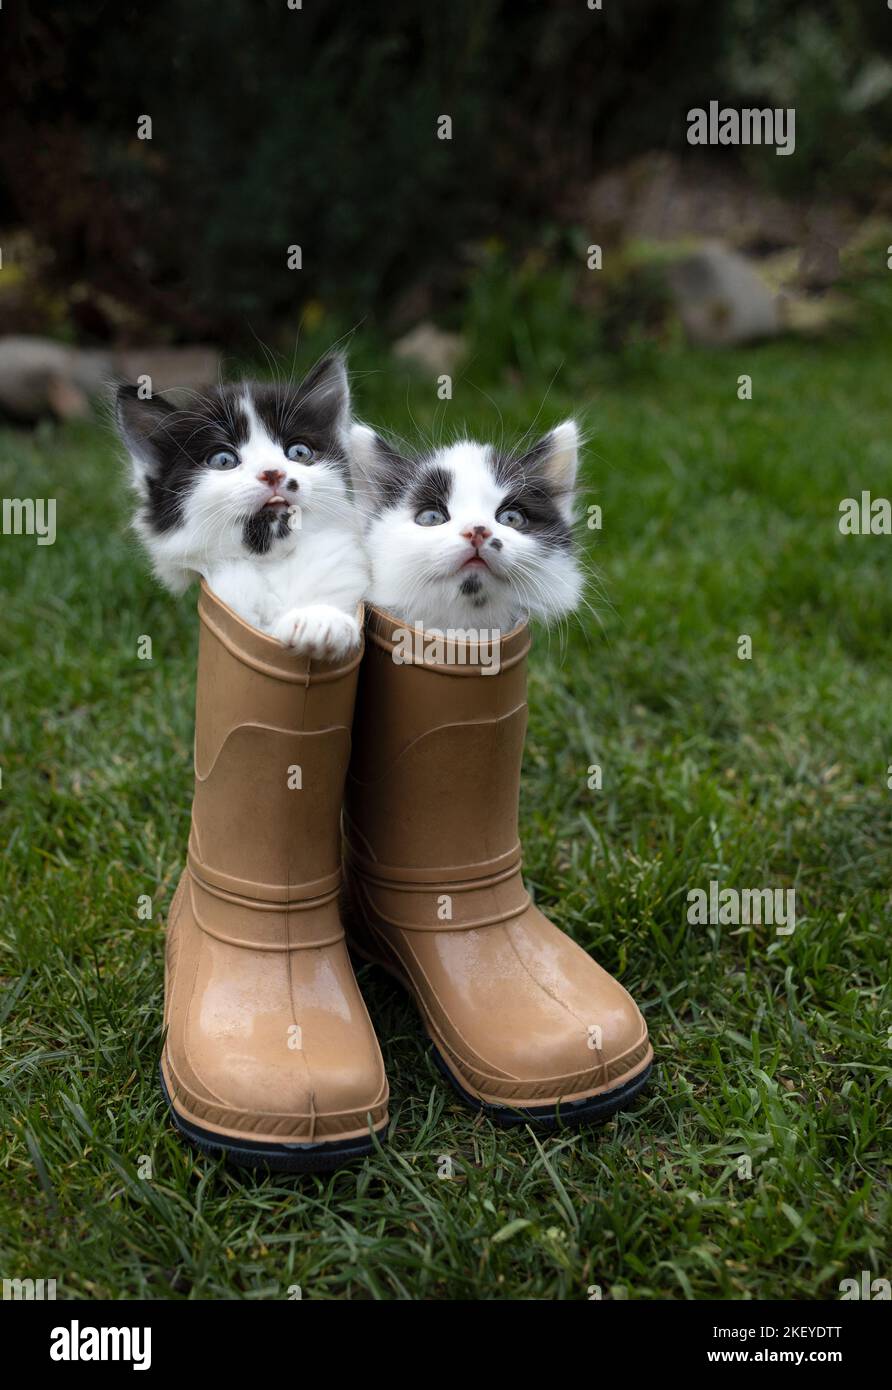 Due piccoli gattini simpatici e divertenti sono seduti in stivali di gomma per bambini in piedi sull'erba. Animali domestici in natura. Mondo gatto e animale domestico giorno Foto Stock